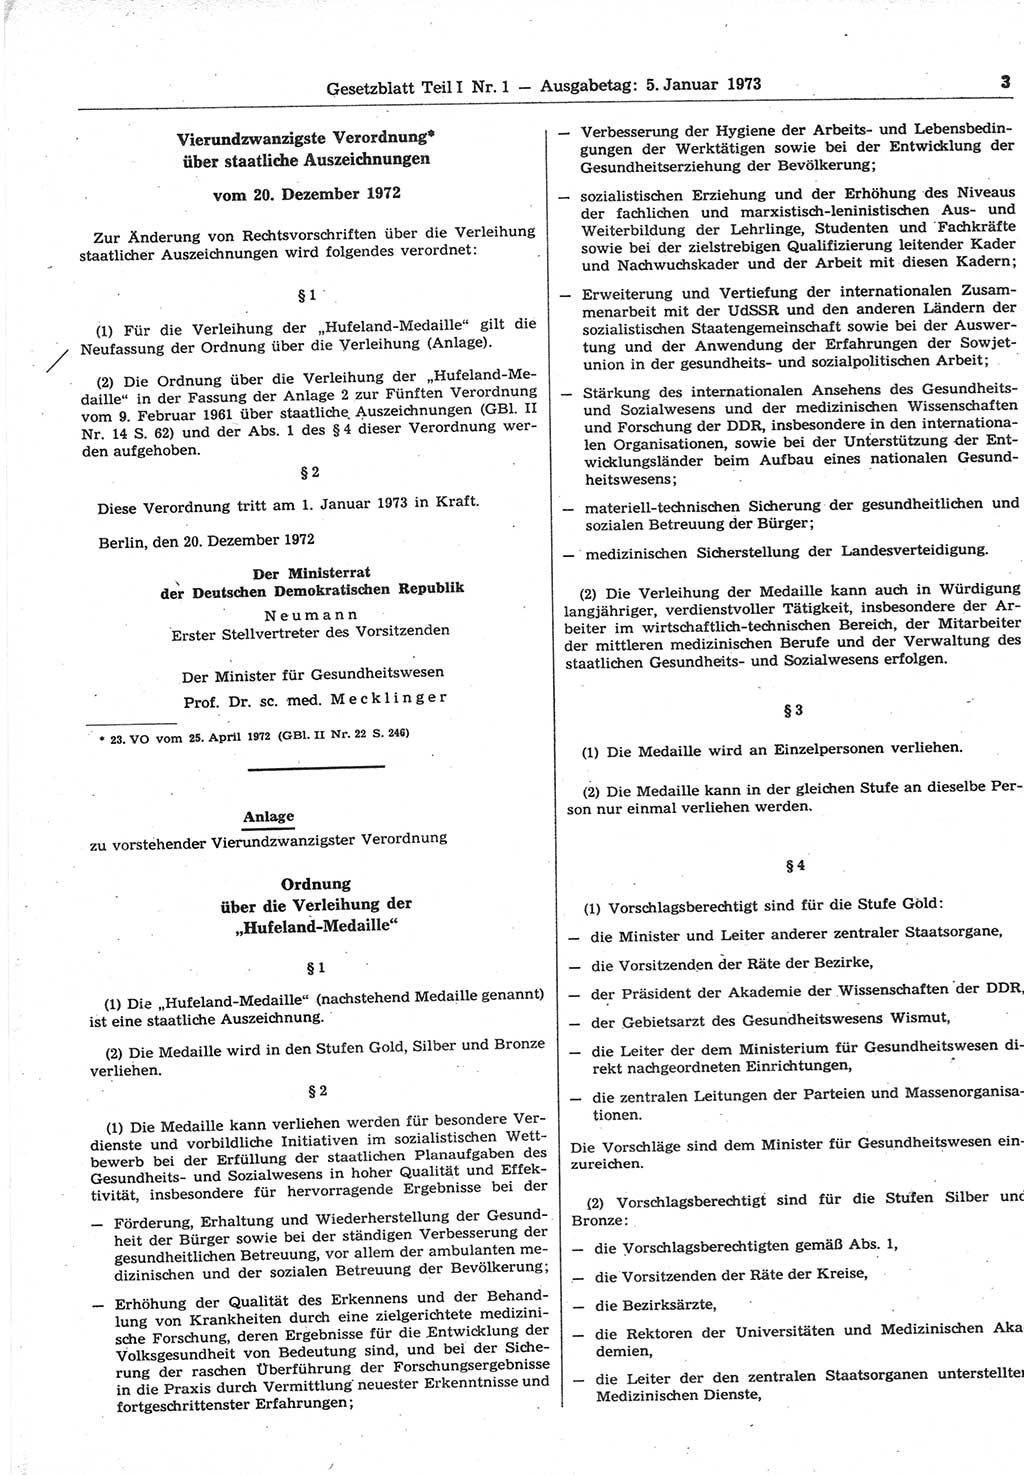 Gesetzblatt (GBl.) der Deutschen Demokratischen Republik (DDR) Teil Ⅰ 1973, Seite 3 (GBl. DDR Ⅰ 1973, S. 3)